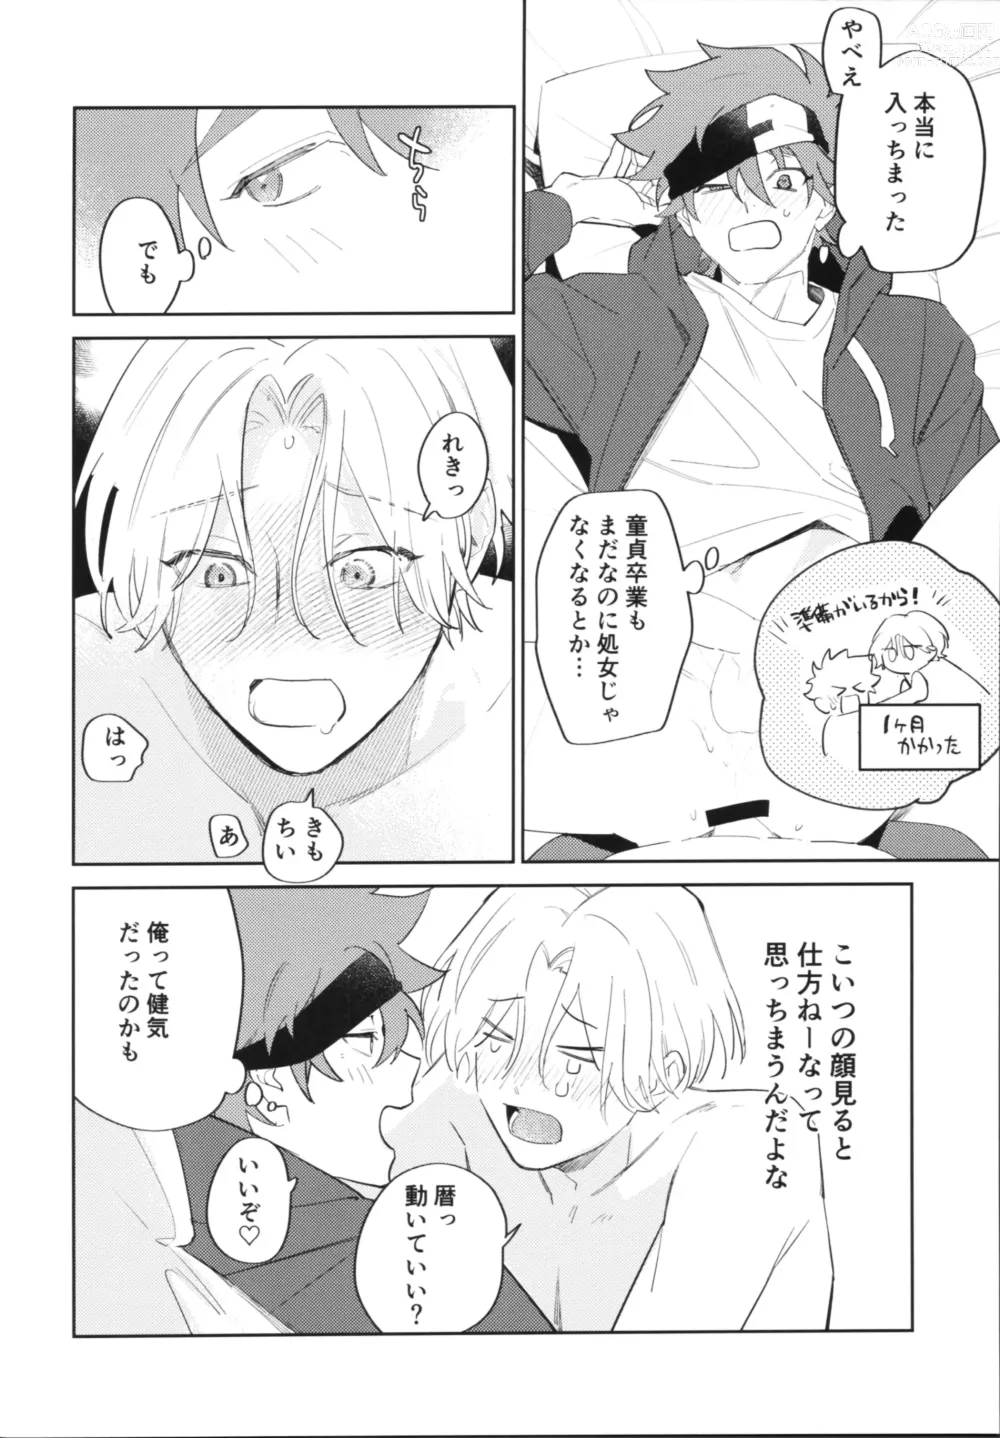 Page 7 of doujinshi Kawaīkara shōganai!